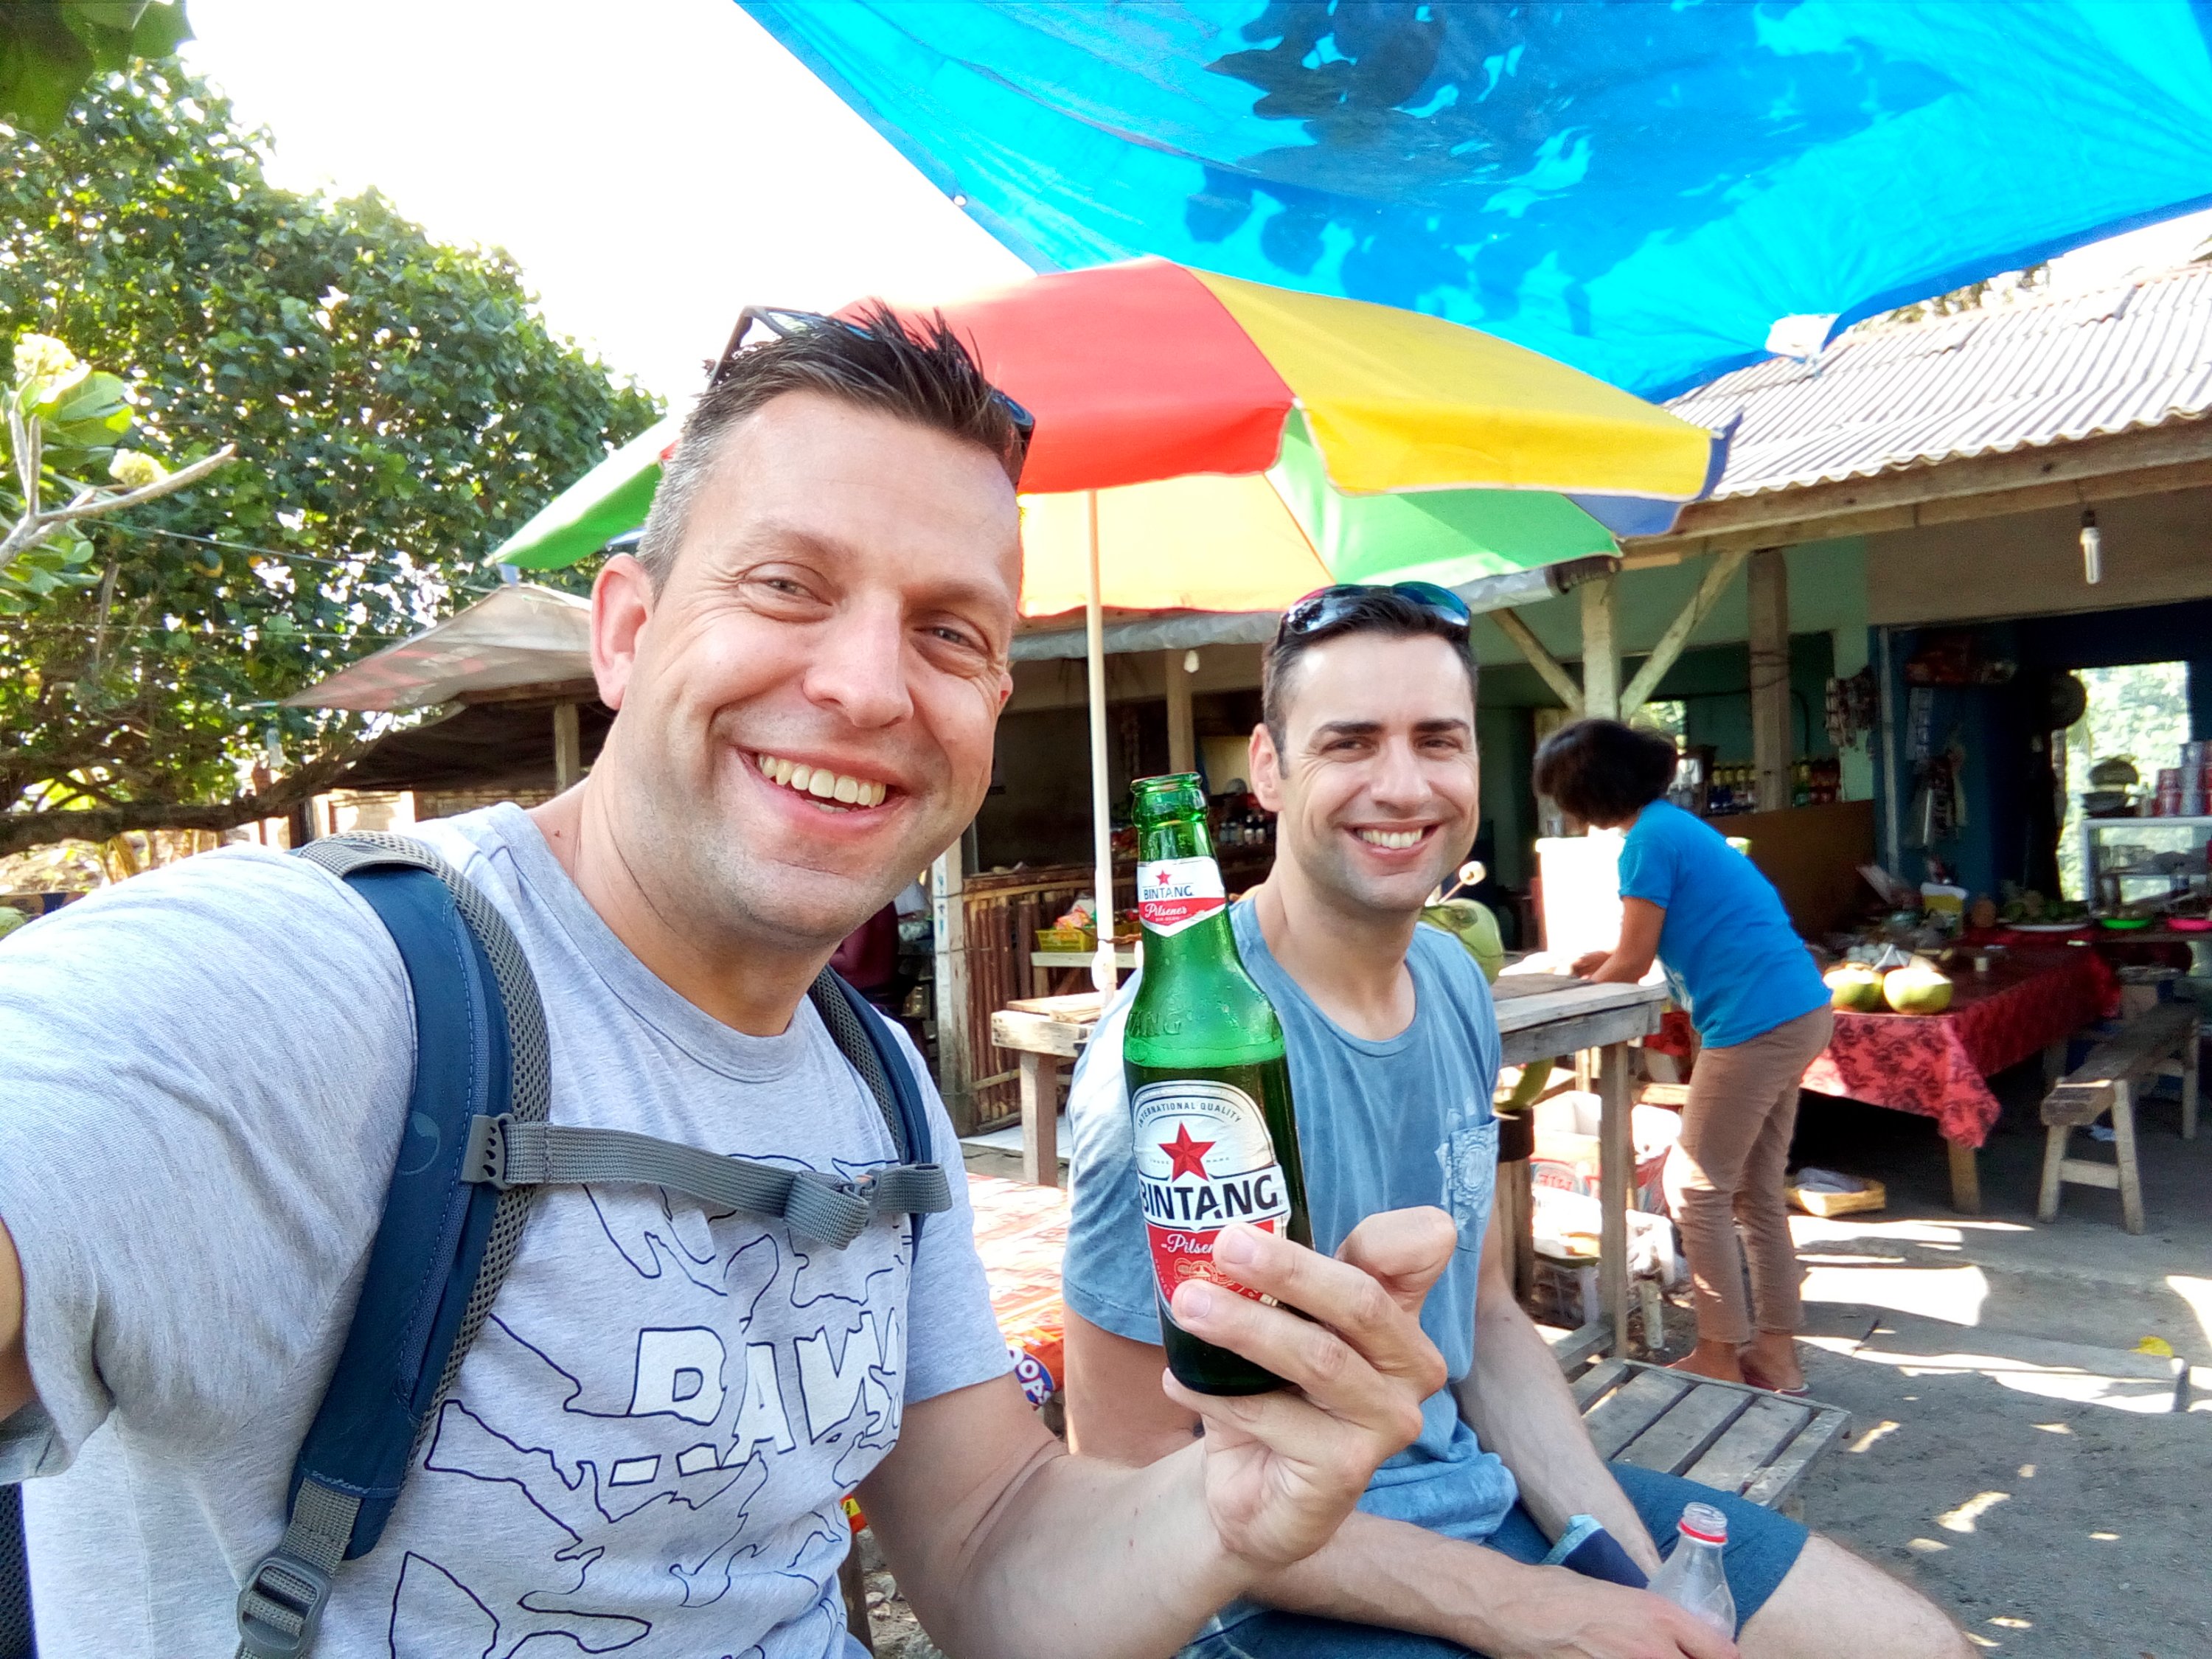 Bintang is wel het meest gedronken biertje op Bali